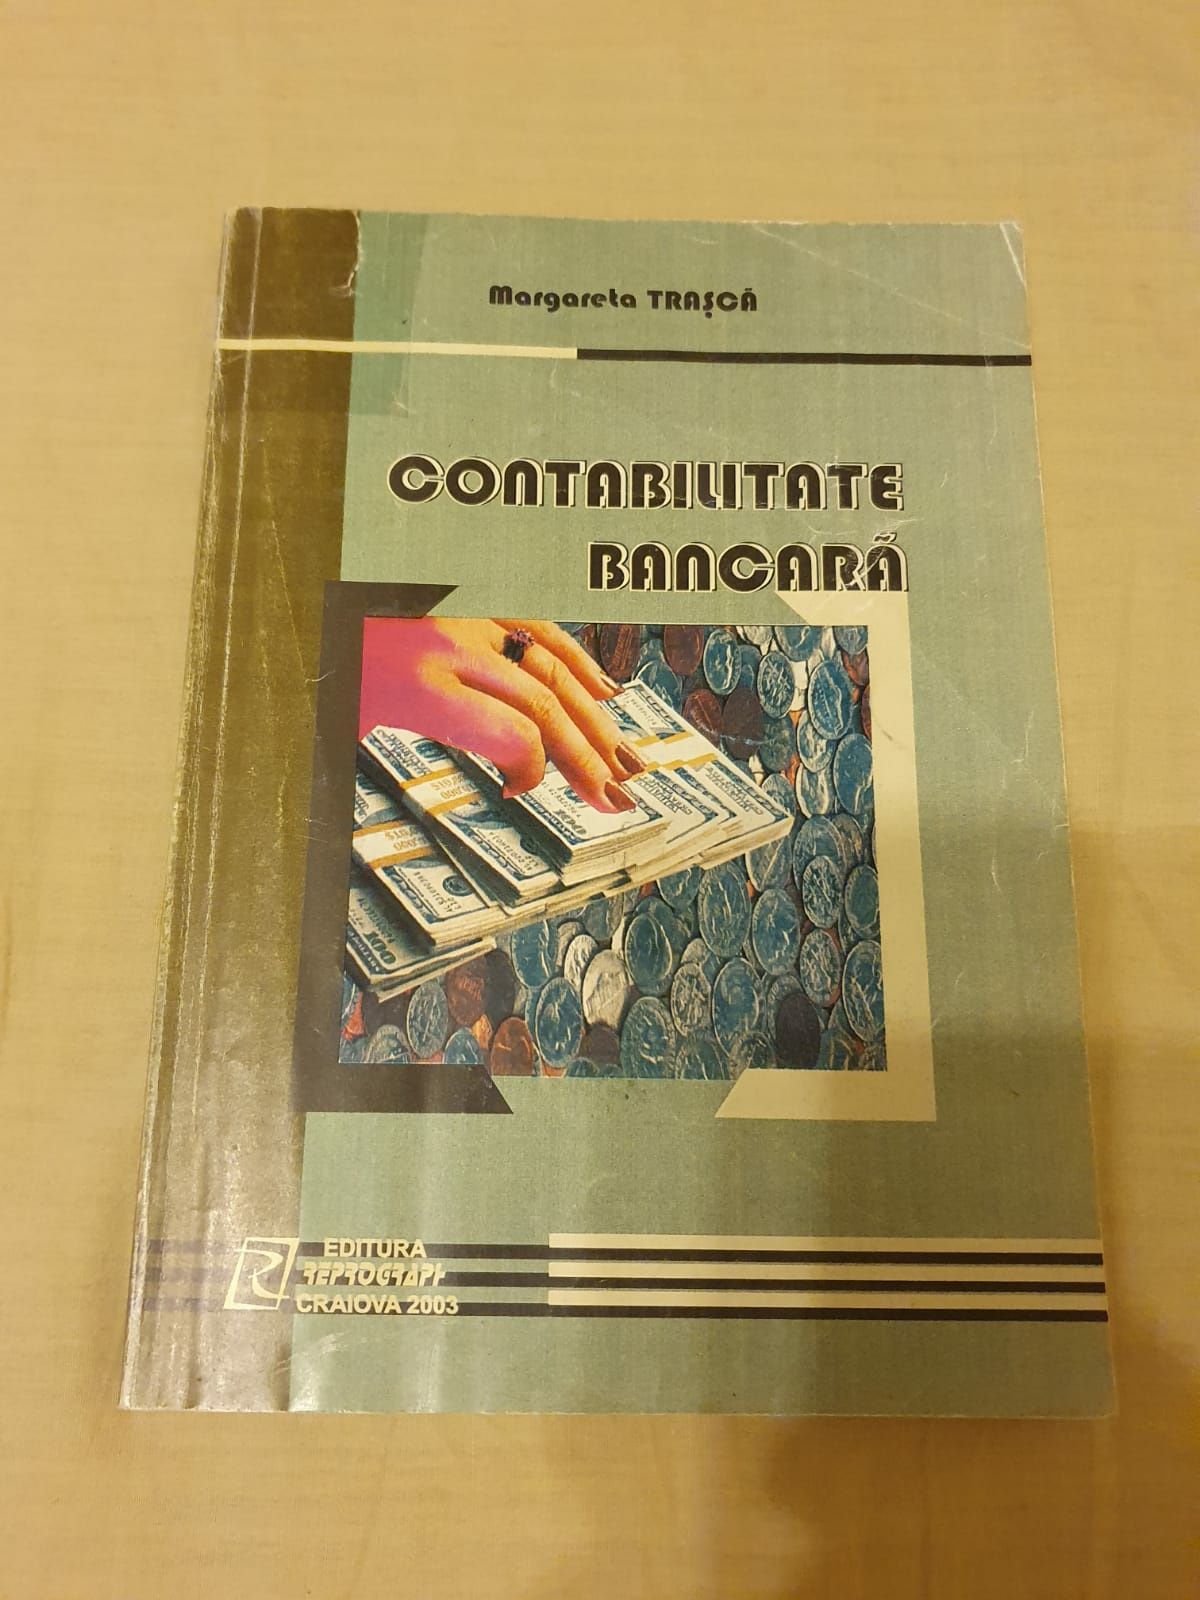 Contabilitate bancară, Margareta Trașcă, ed. Craiova 2003 ,stare buna.